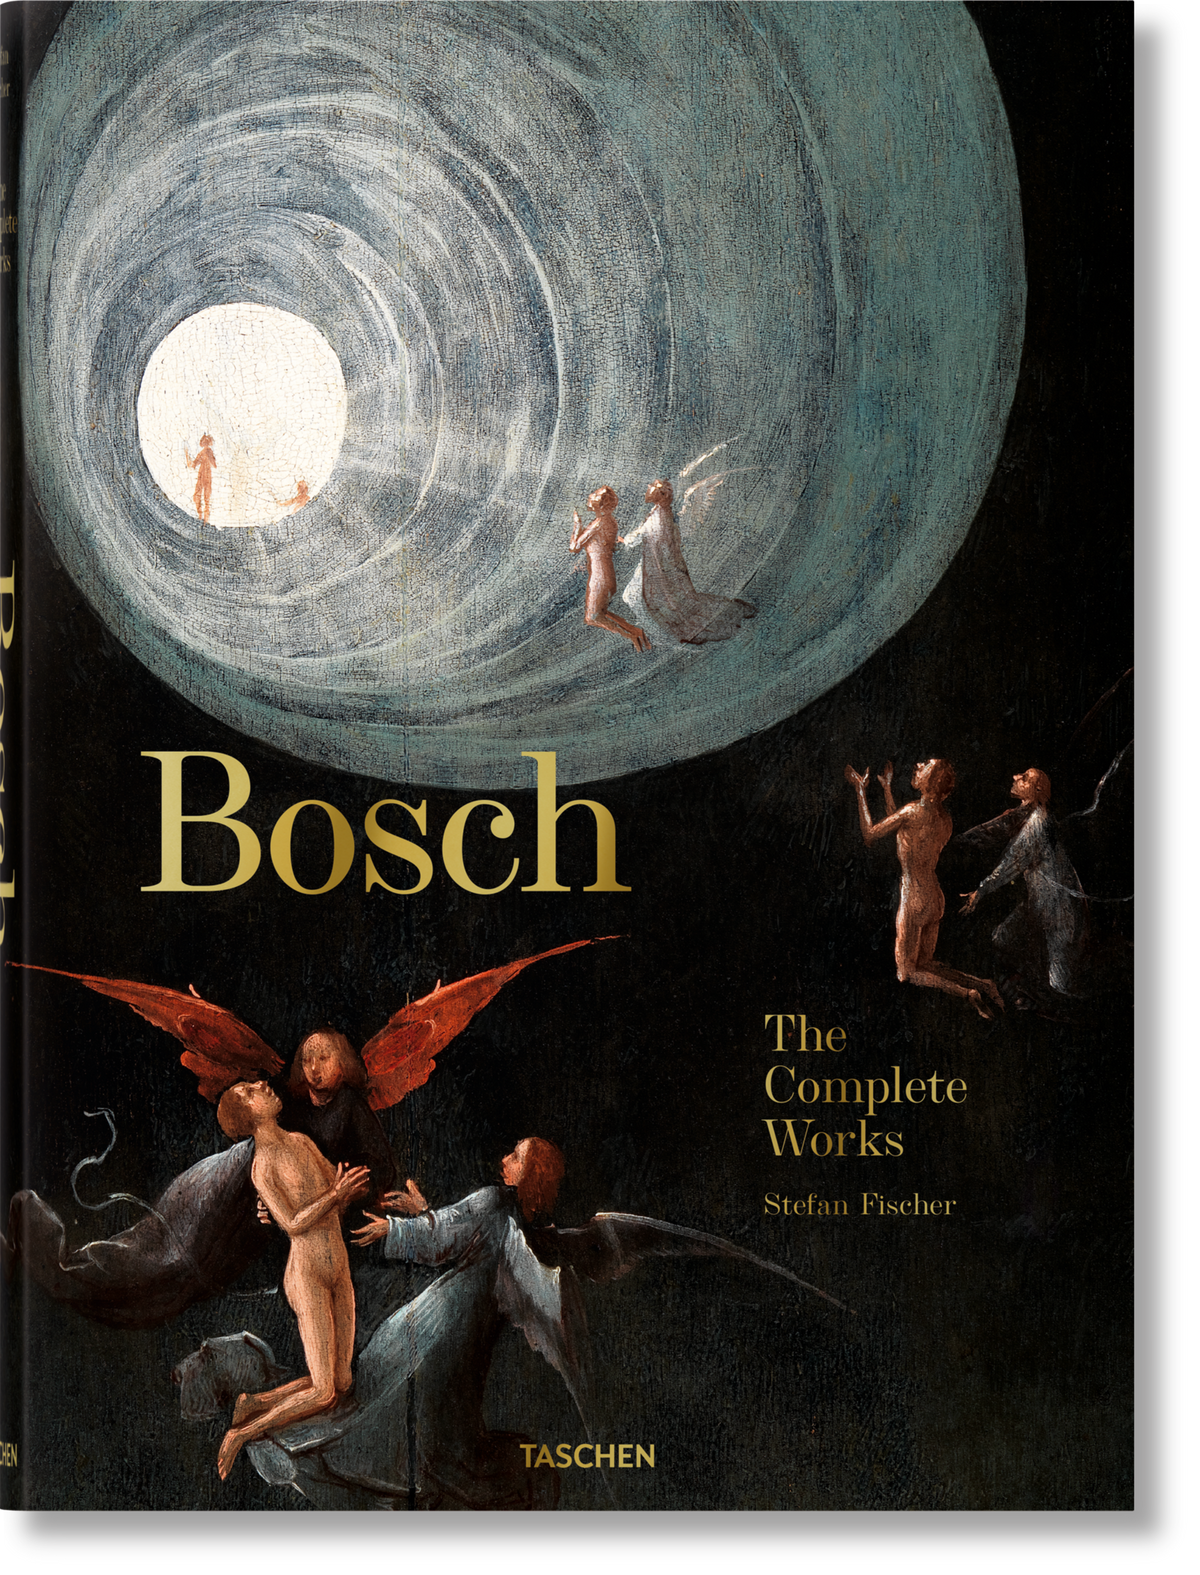 Bosch The Complete Works by Stefan Fischer